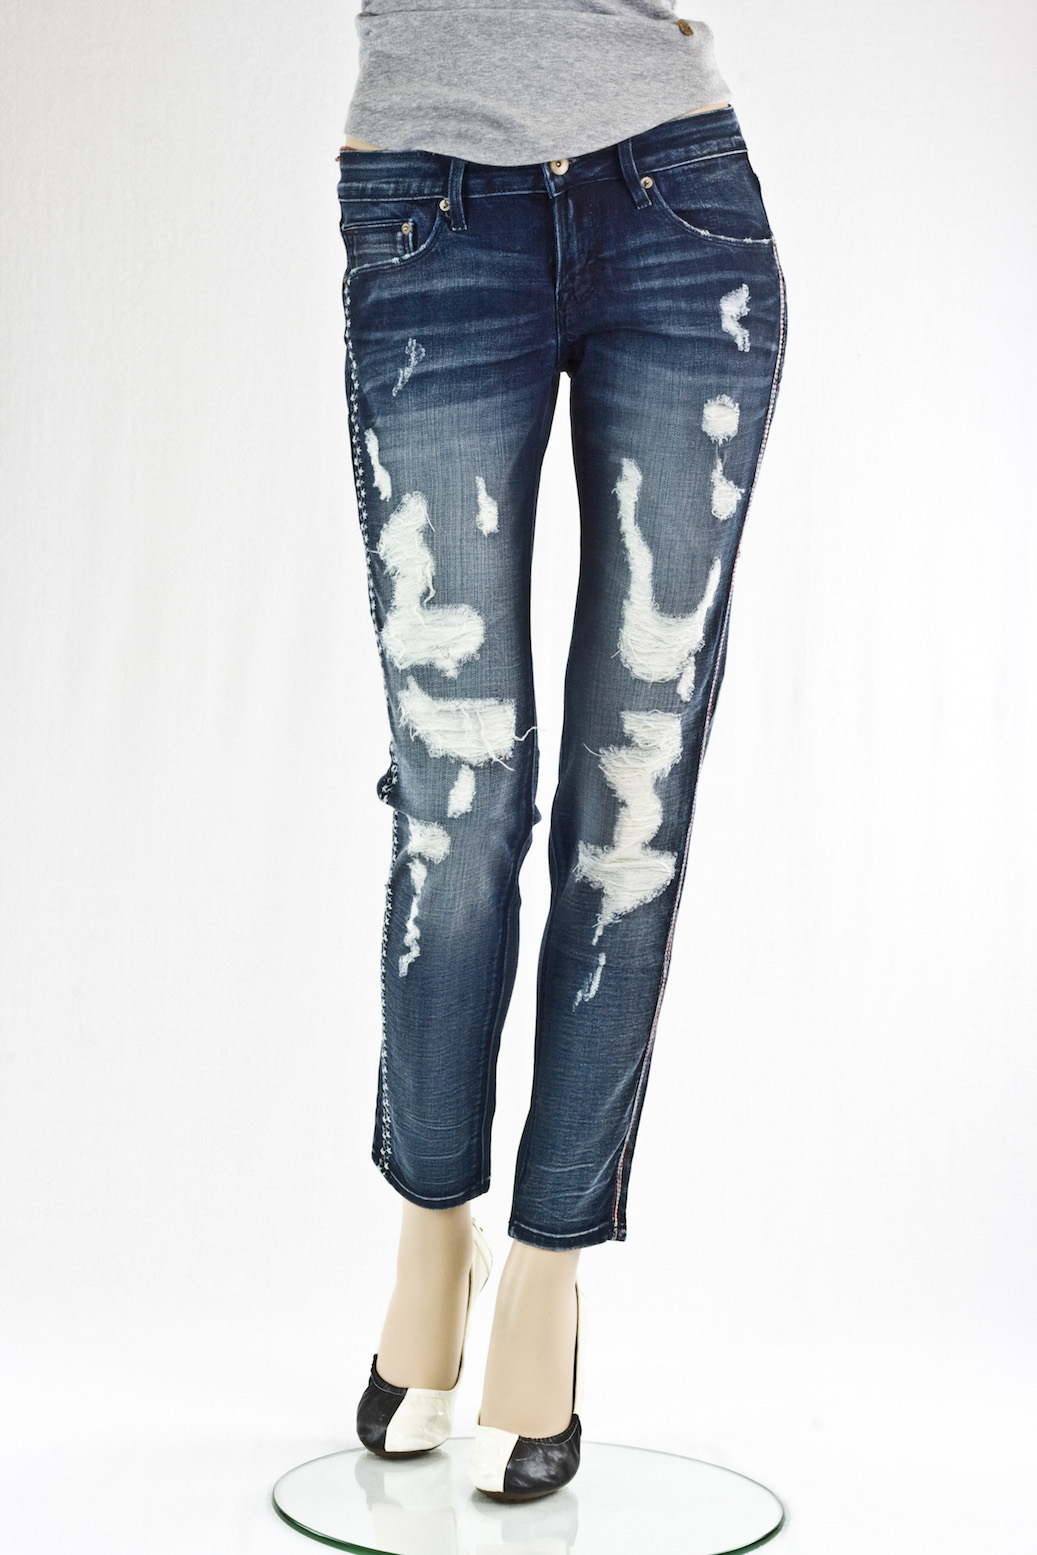 Женские джинсы Cult of individuality винтажные "Скини" Hitcher destroyed jeans интернет-магазин Fashion Jeans